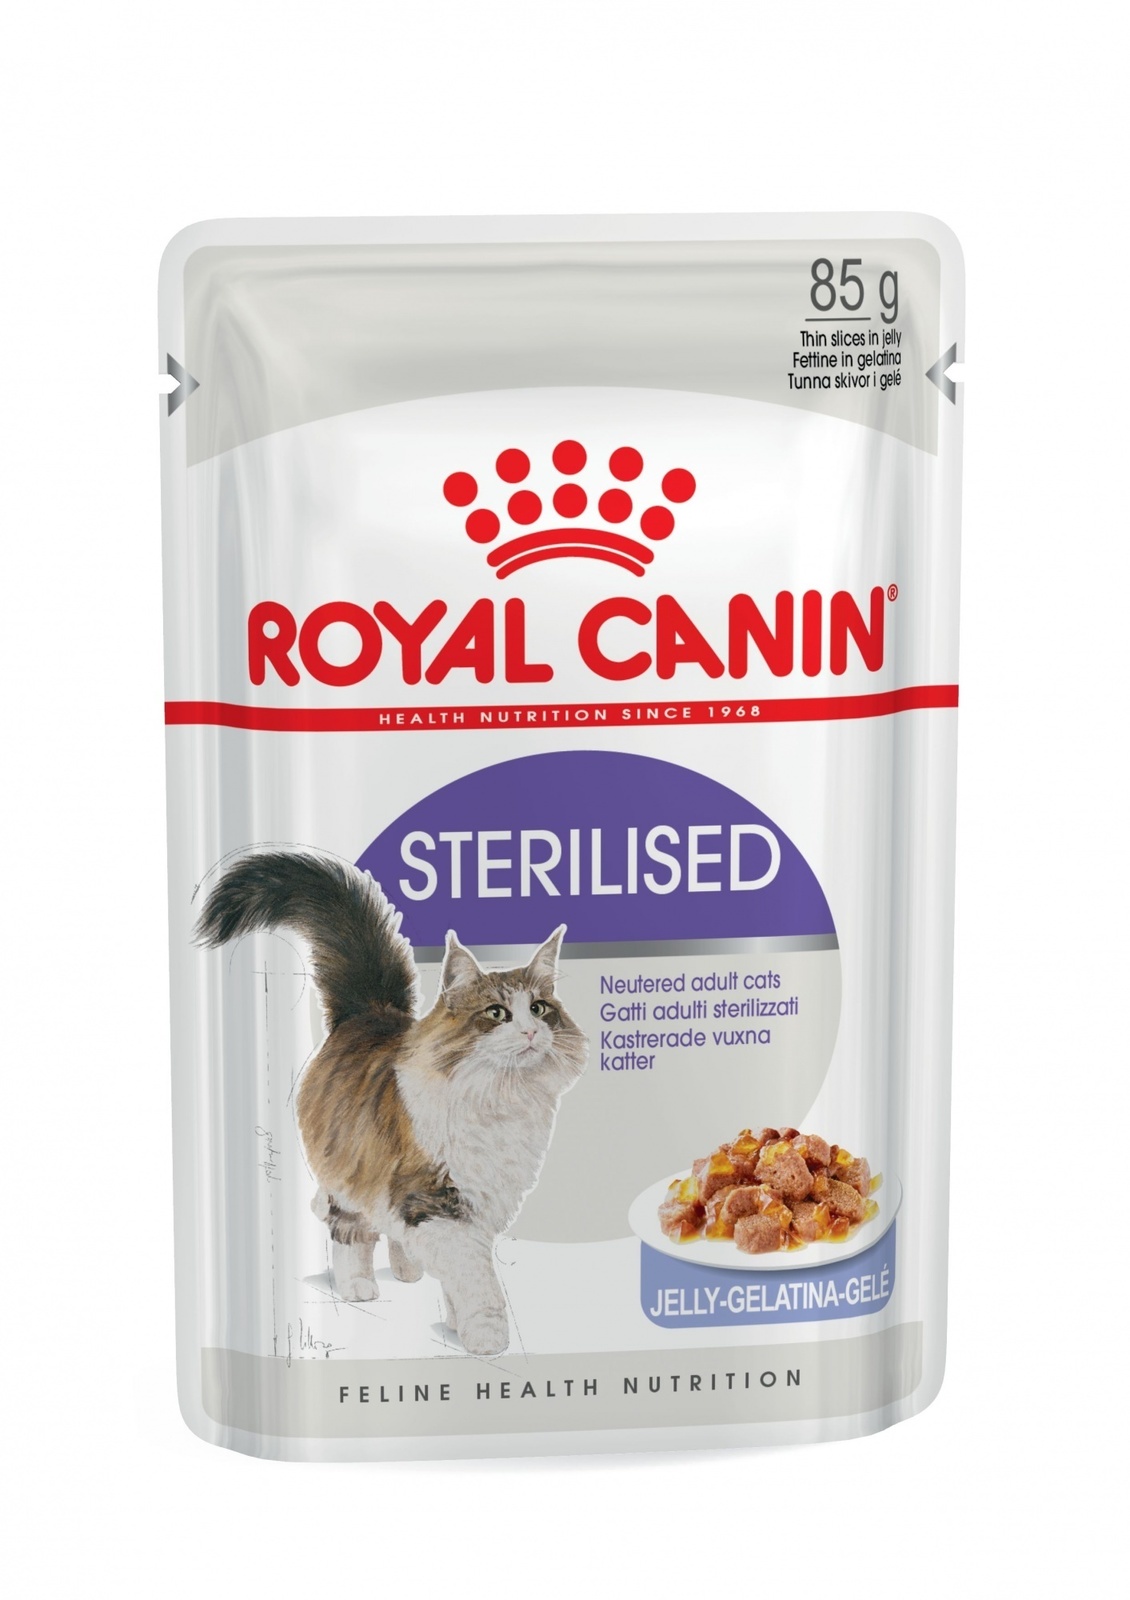 Royal Canin кусочки в желе для кастрированных кошек 1-7лет (85 г)